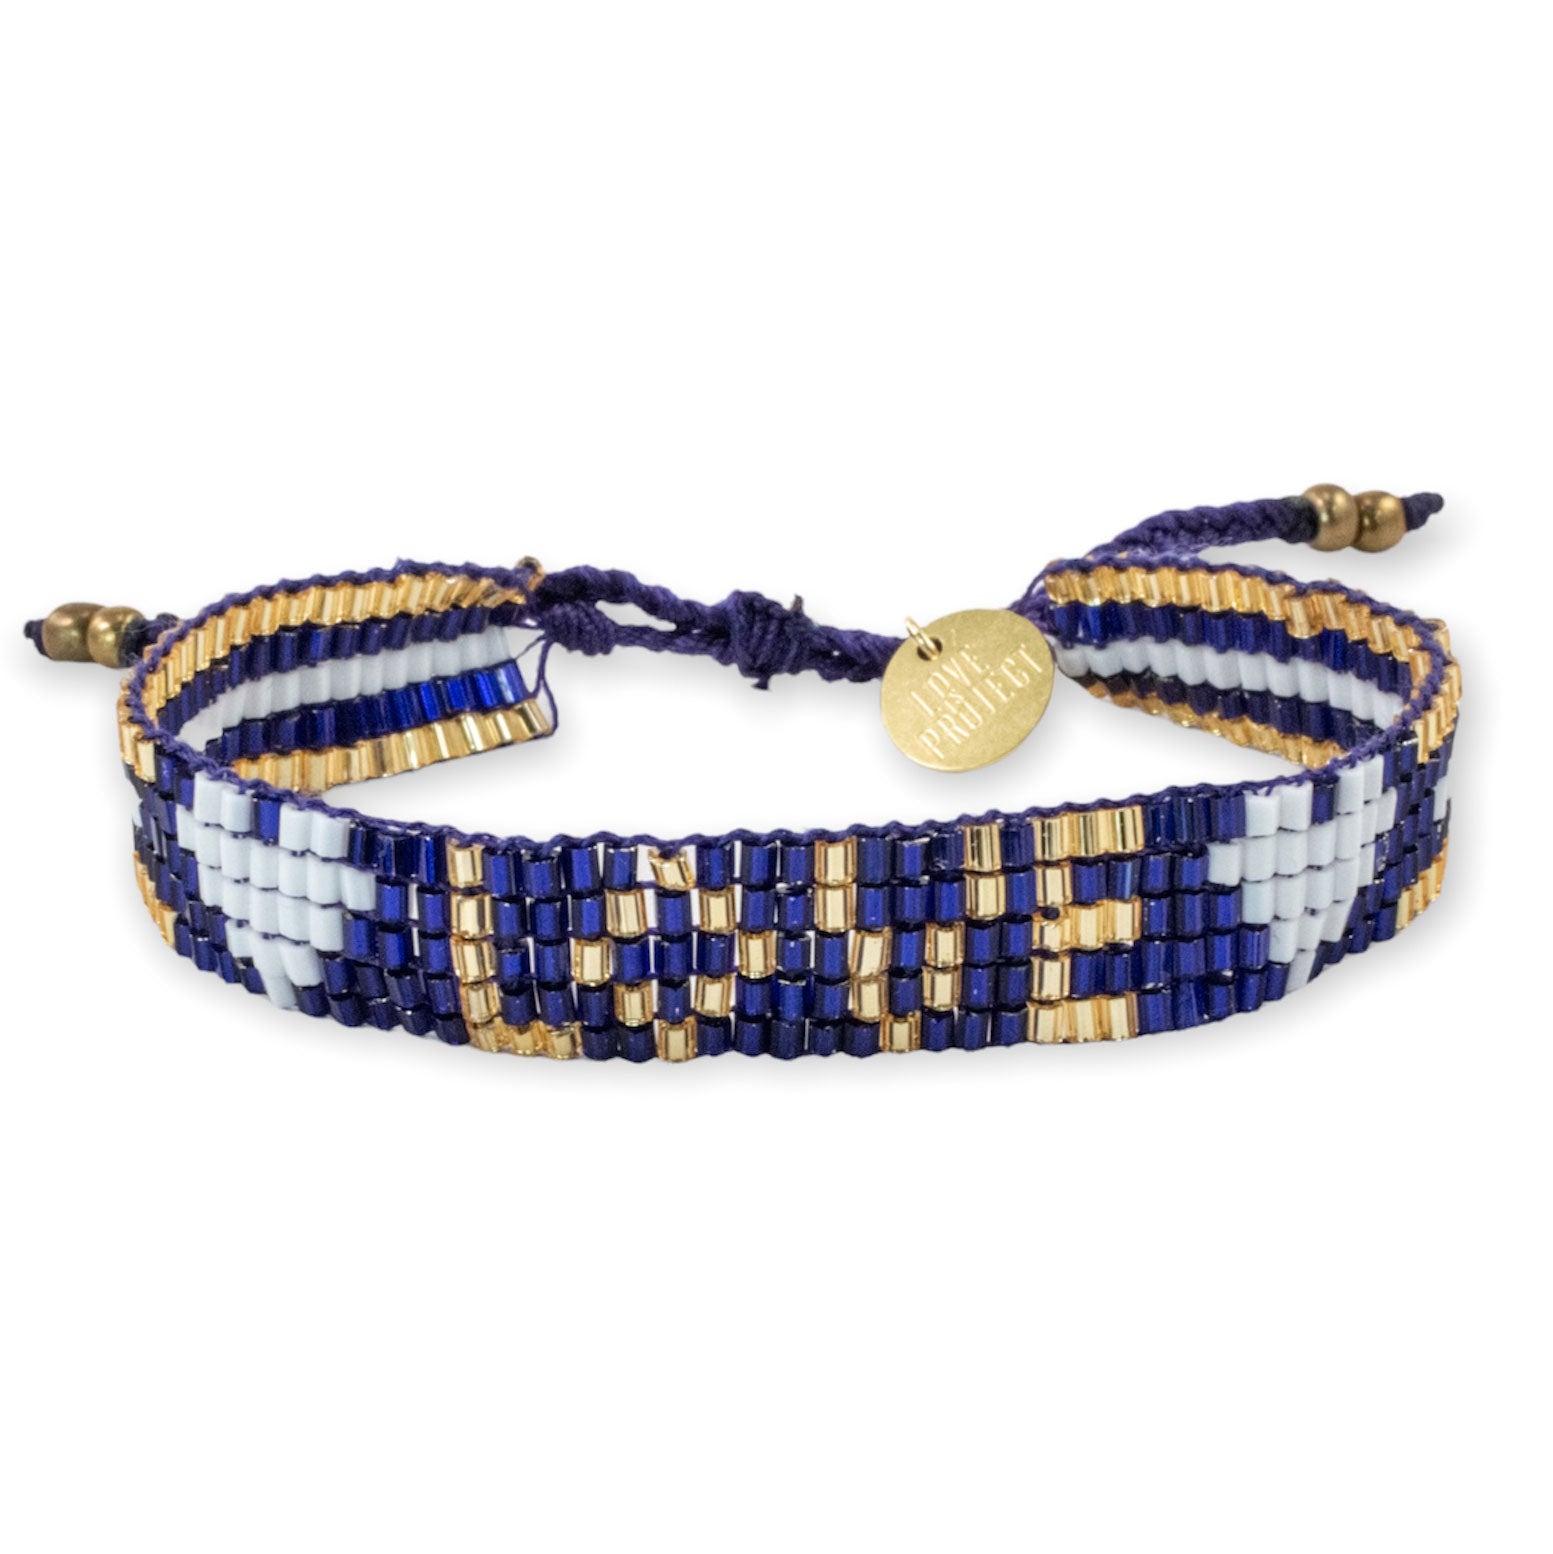 Bracelet ankita, Bracelet Beads, Partner Bracelet, Friendship Bracelet,  Blue Bracelet, Bracelet Beads Friendship, Bracelet Beads 